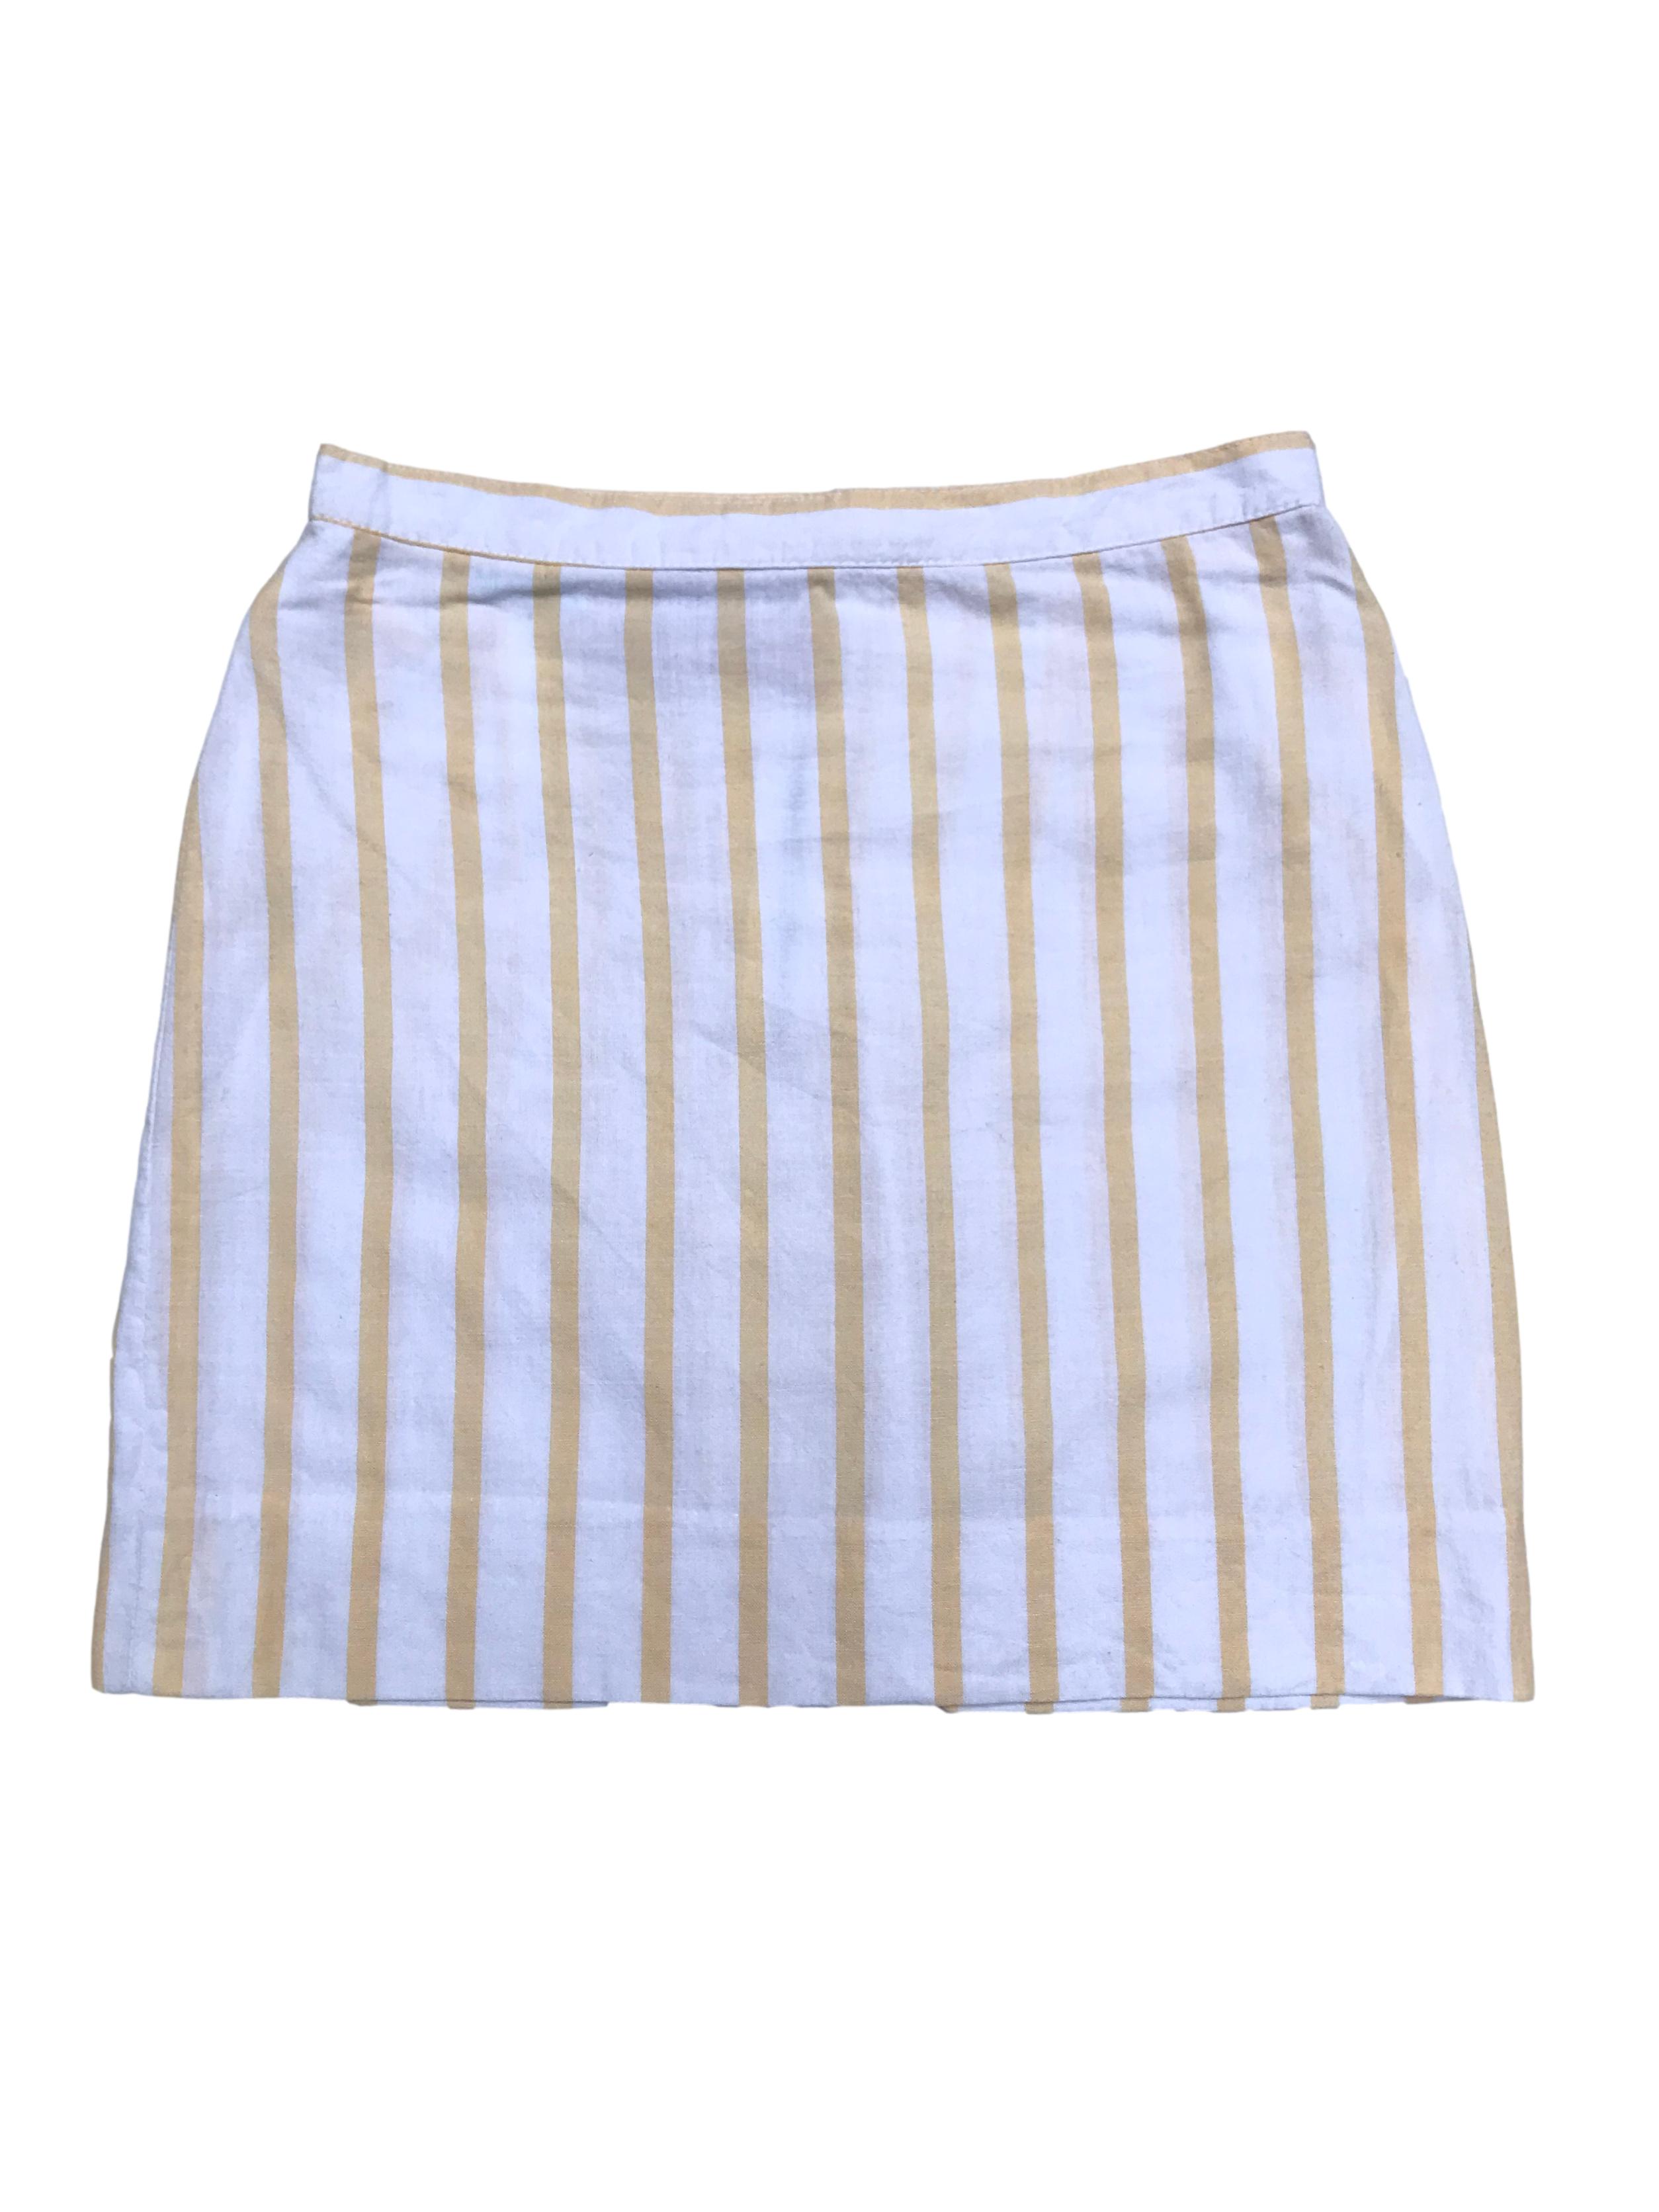 Falda playera de tela tipo lino blanco con líneas amarillas, botón y cierre posterior. Cintura 66cm Largo 39cm